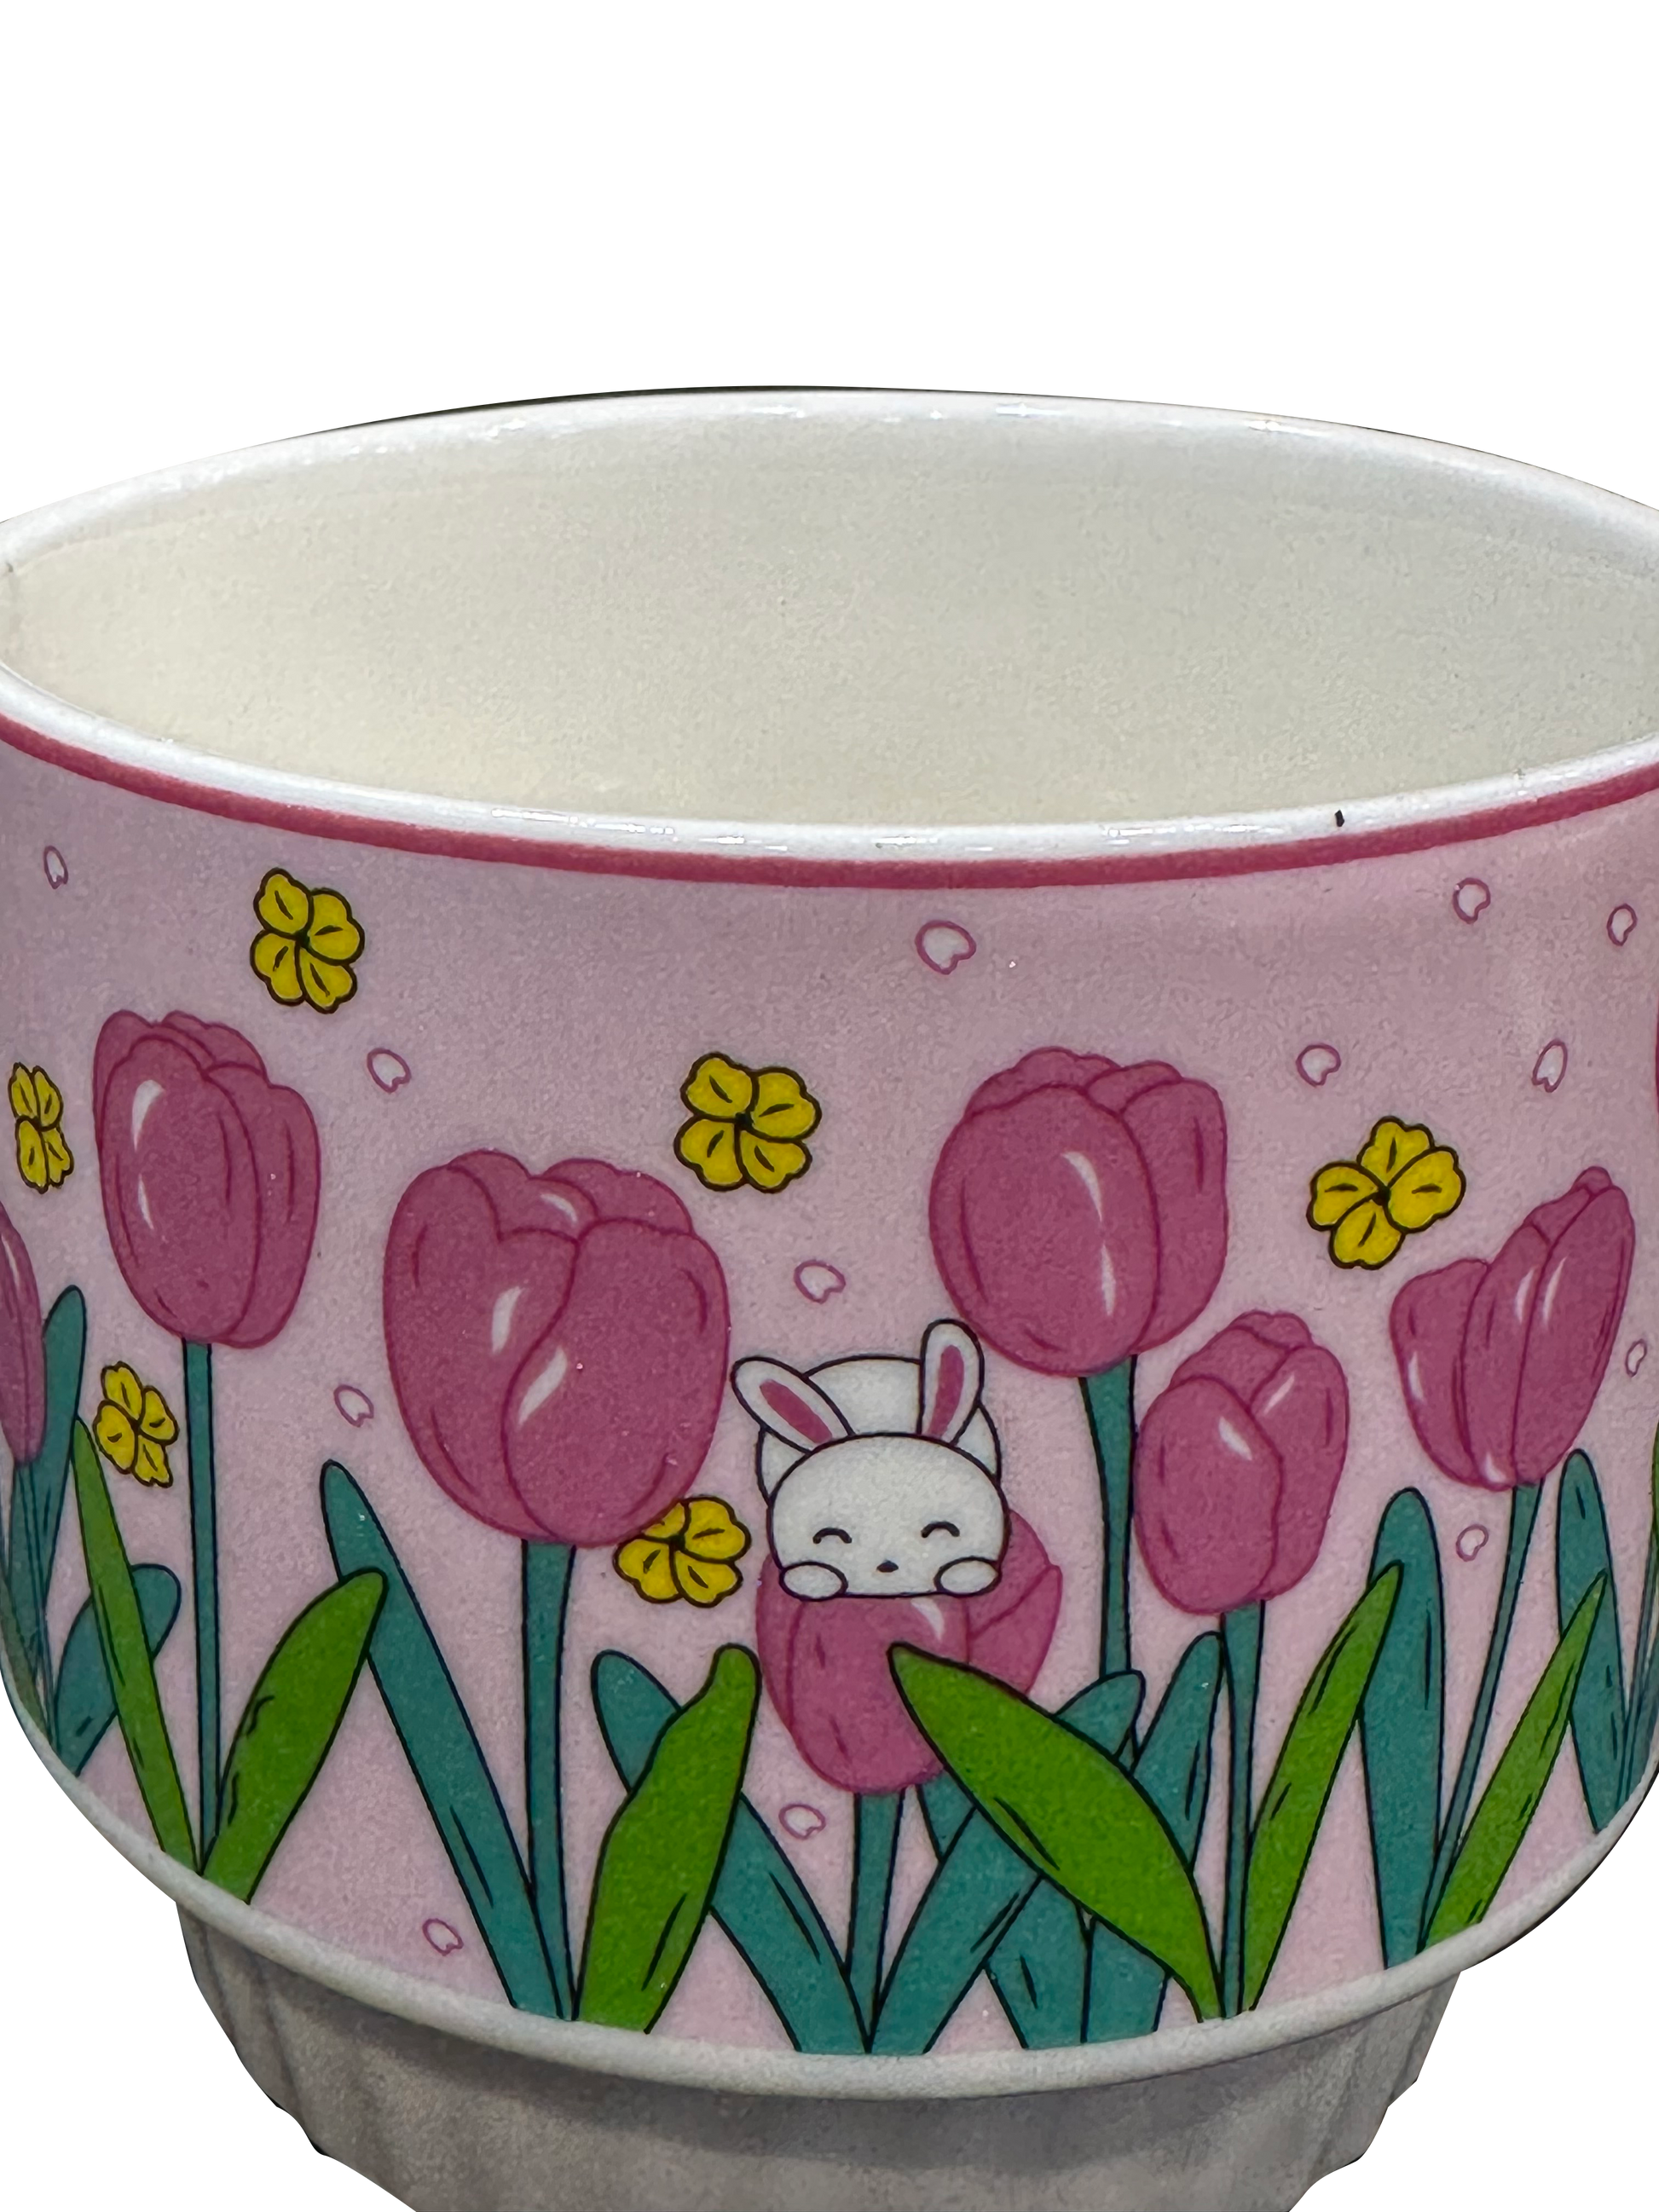 Handmade ceramic coffee mugs - Sunset Gifts Store